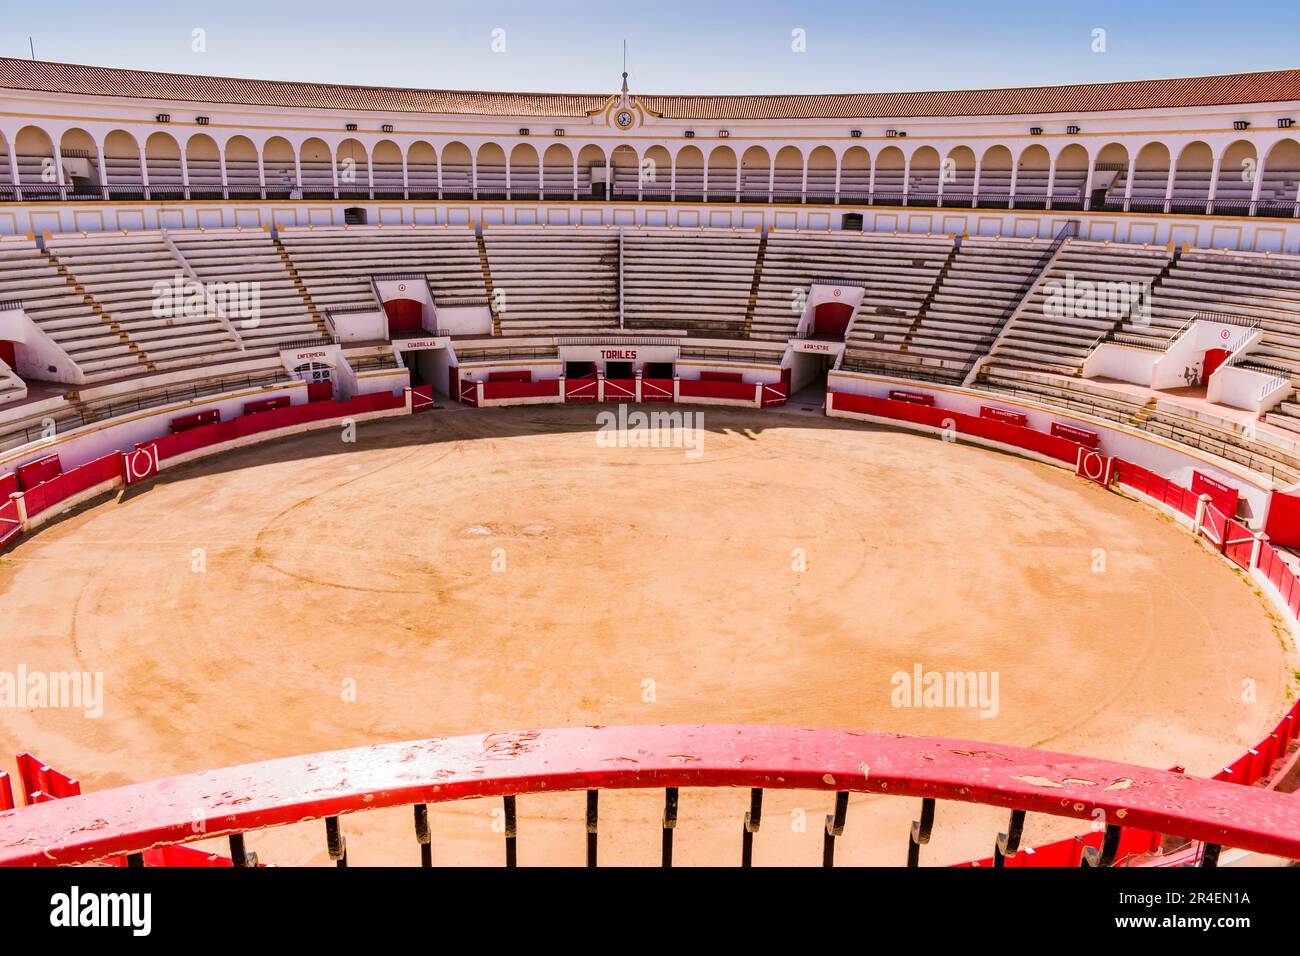 Arena o ruedo, un campo di roccia densamente schiacciata, albero, che è il palcoscenico per la corrida. L'arena di Melilla, conosciuta anche come la moschea Foto Stock